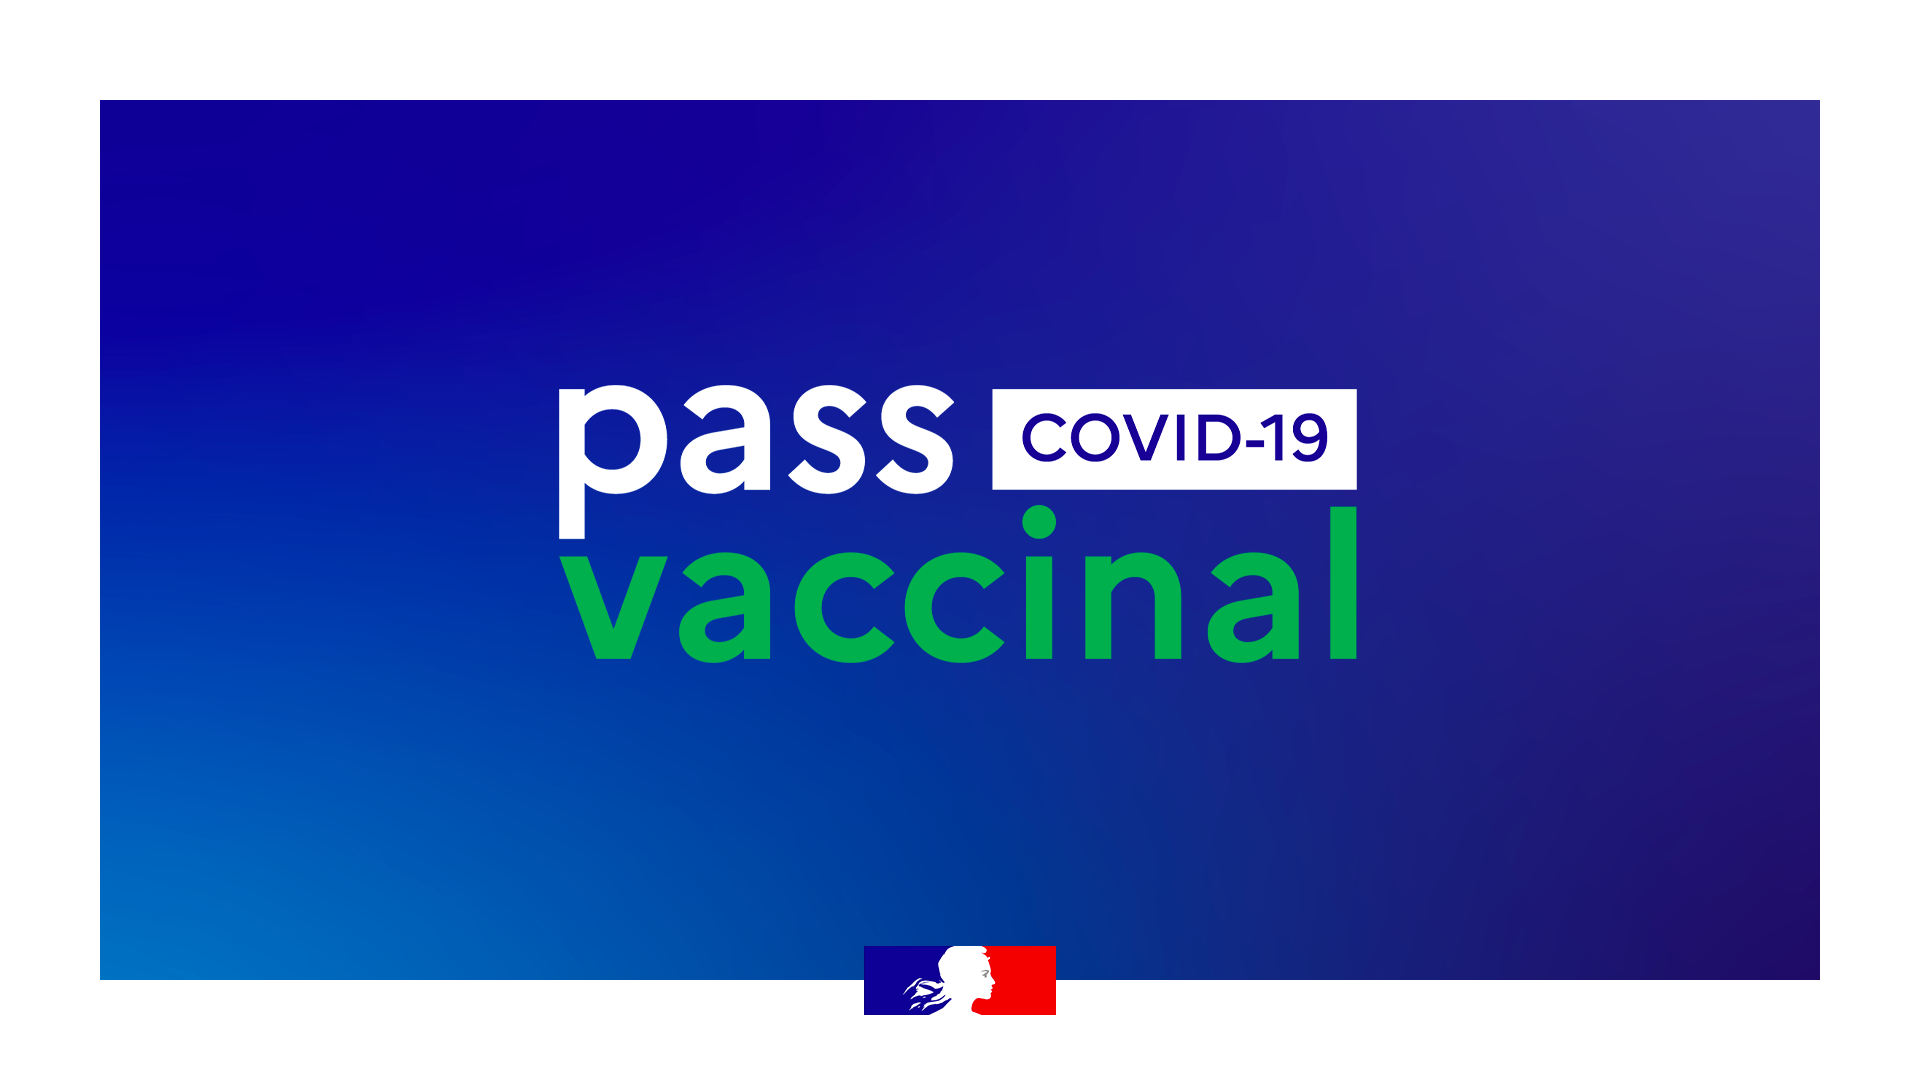 Pass vaccinal